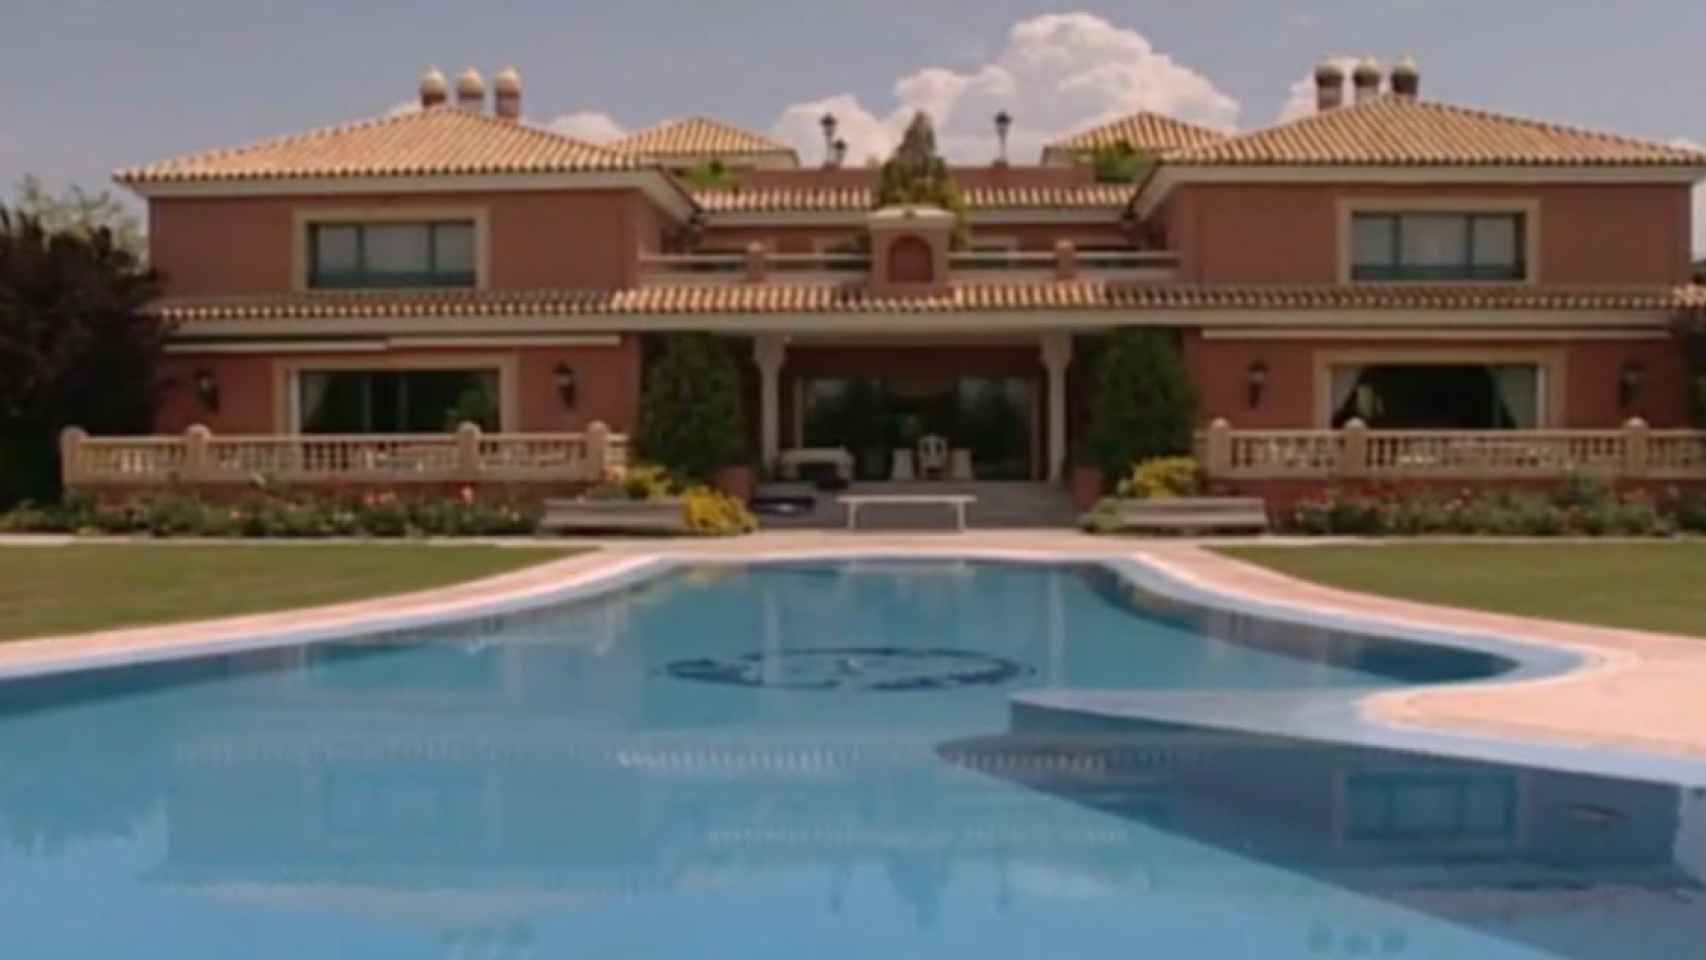 La lujosa mansión de José Luis Moreno en Boadilla del Monte (Madrid) que ha registrado la Policía.